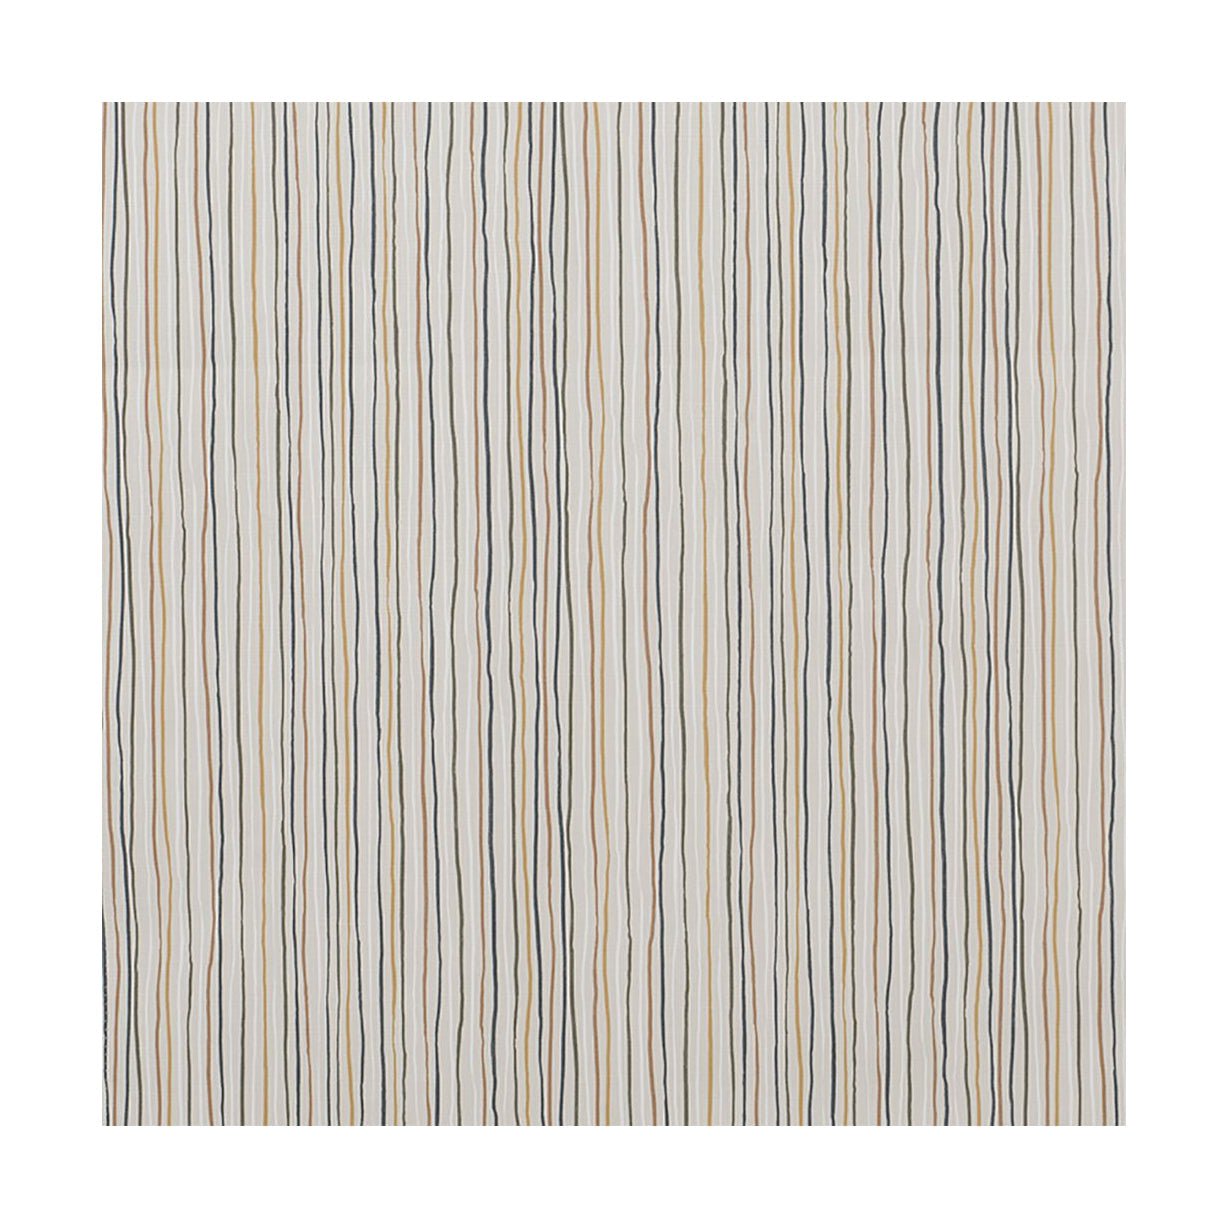 Spira Stripe Fabric Ancho de 150 cm (precio por metro), multicolor